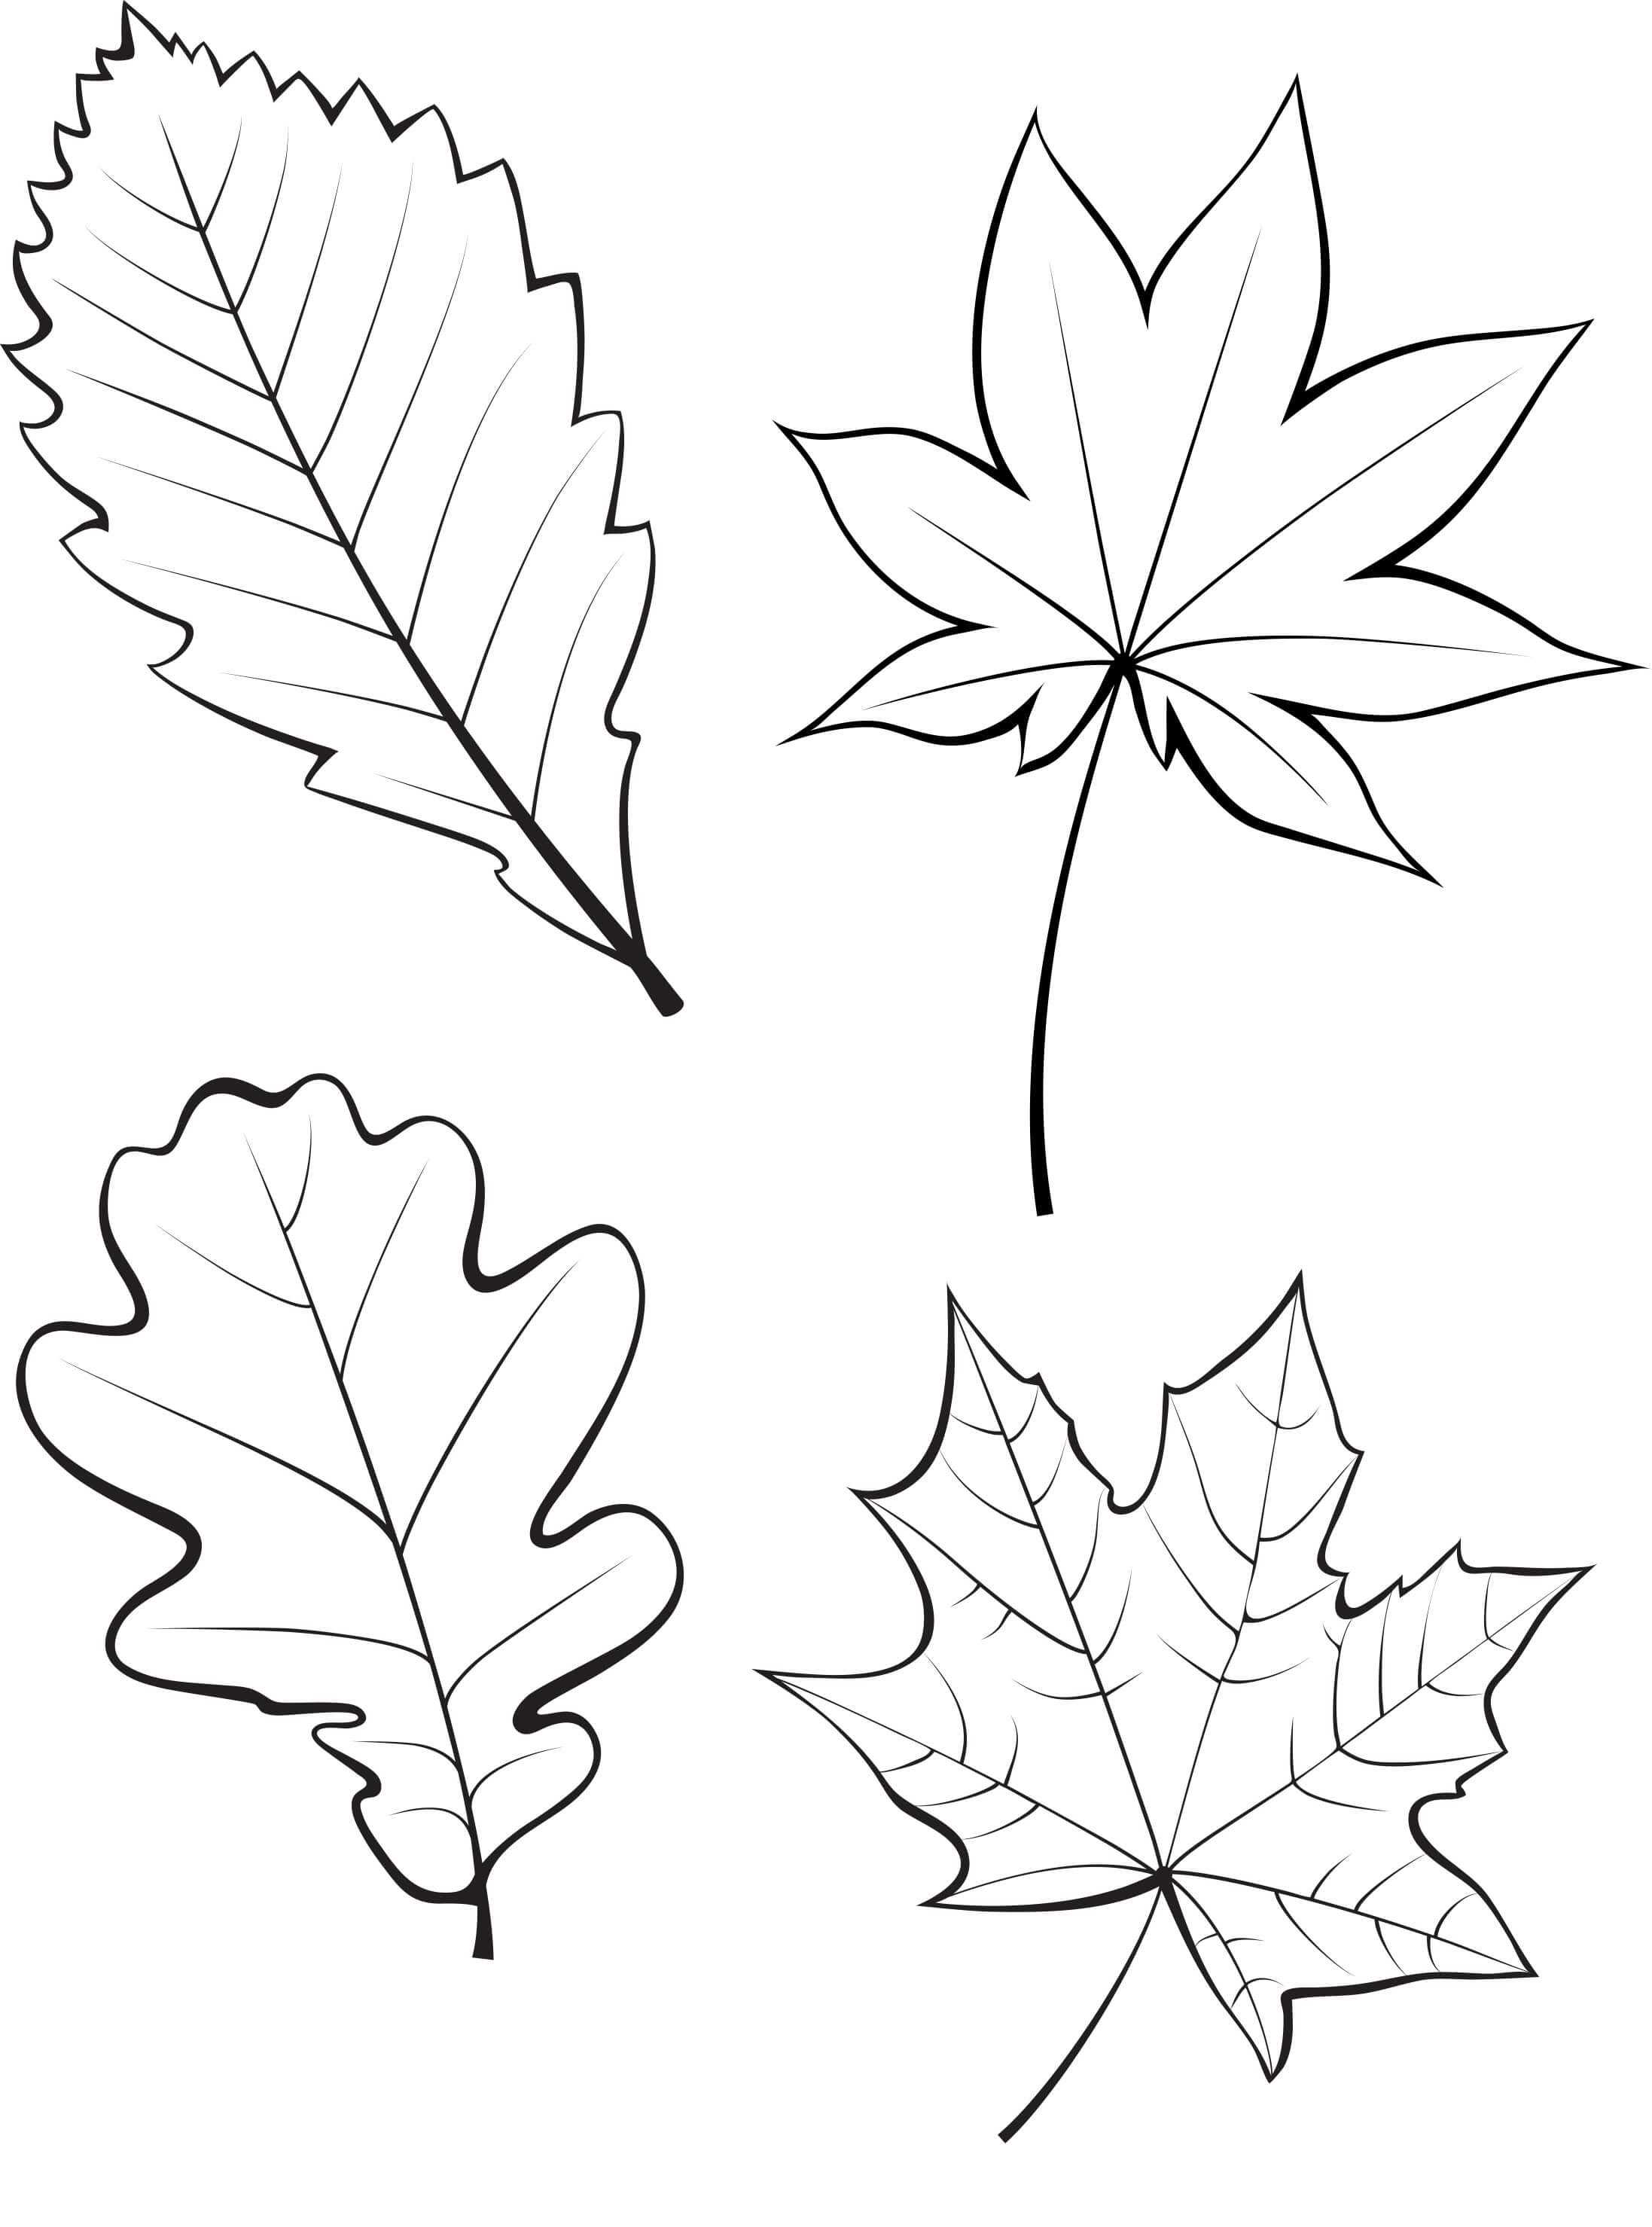 Шаблоны листьев для вырезания из бумаги — распечатать с сайта